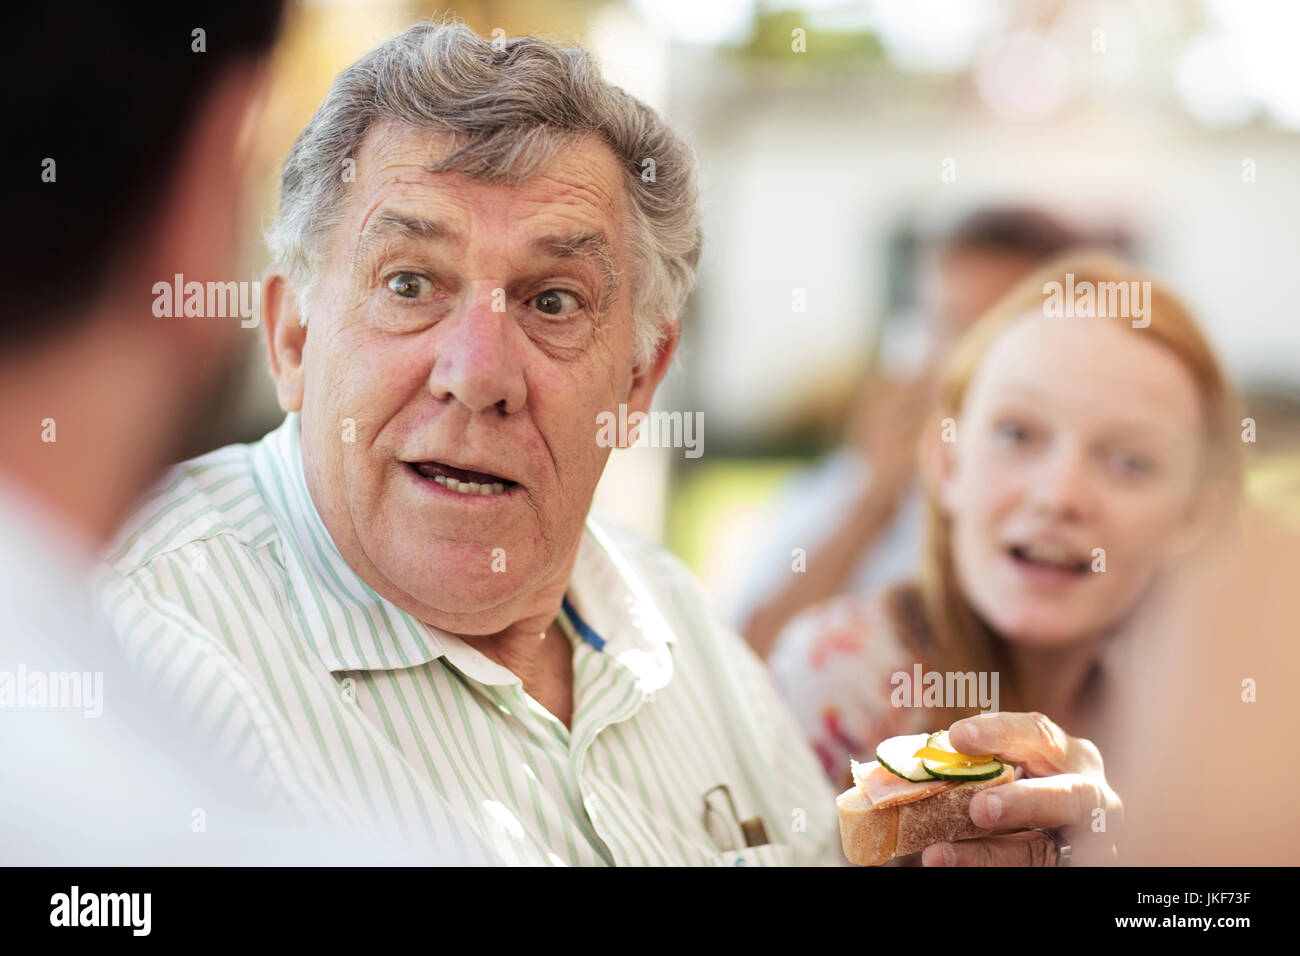 Senior man socializing on a garden party Stock Photo